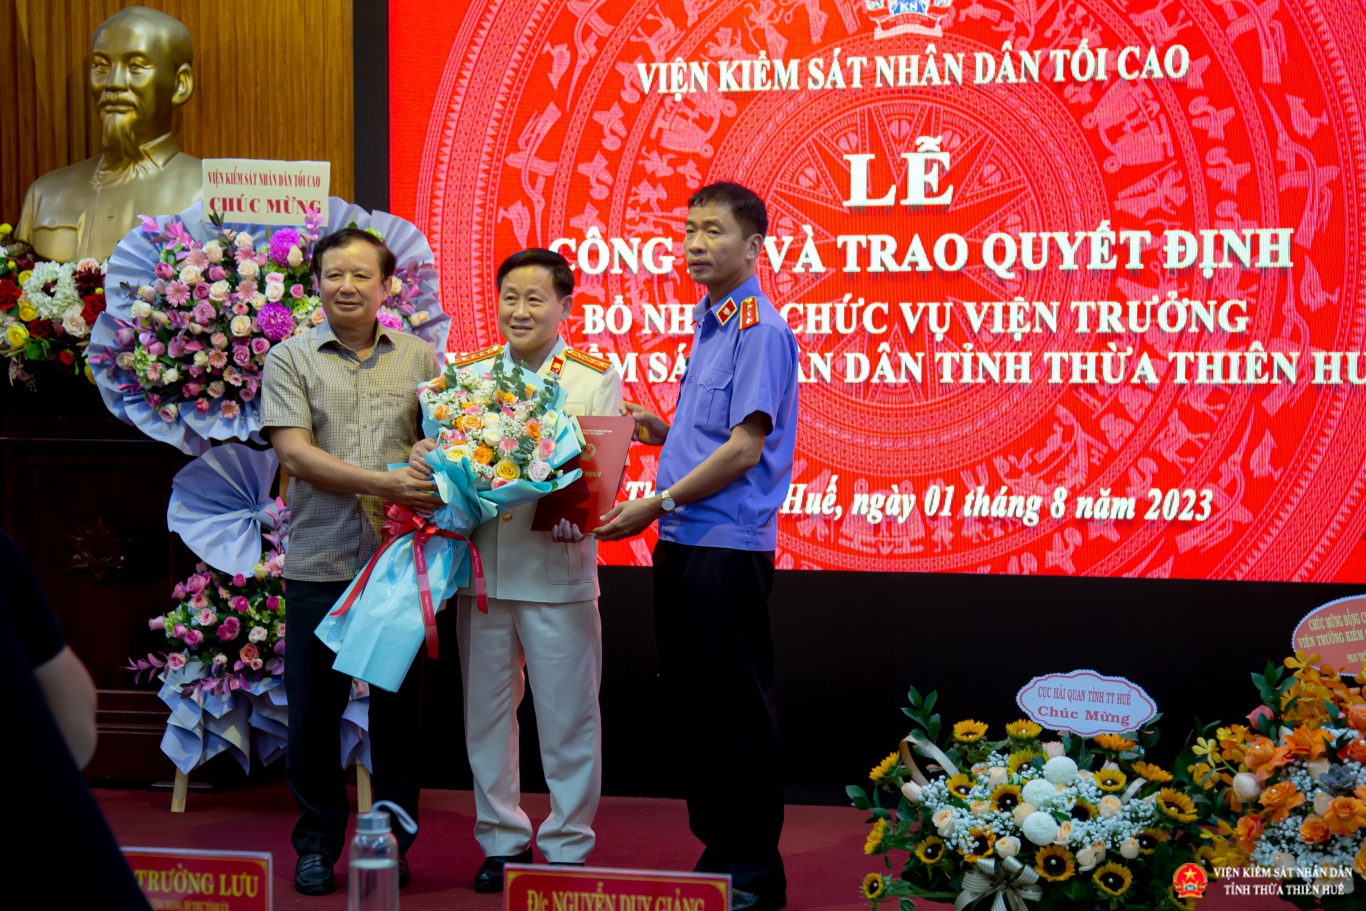 Đồng chí Nguyễn Duy Giảng và đồng chí Lê Trường Lưu trao Quyết định bổ nhiệm chức vụ Viện trưởng VKSND tỉnh Thừa Thiên Huế và tặng hoa chúc mừng đồng chí Hồ Thanh Hải.